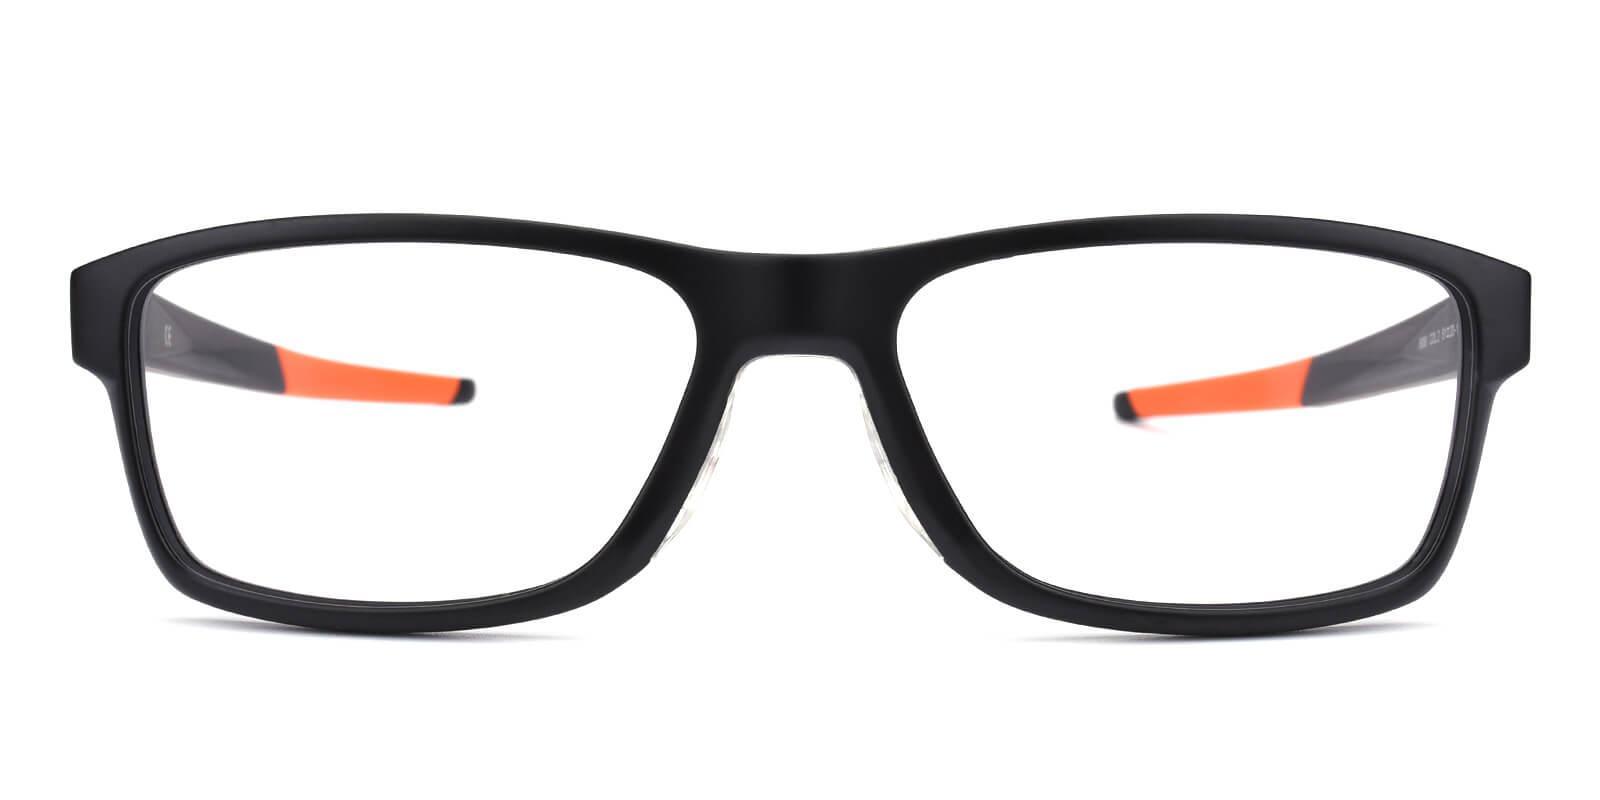 Cohen Orange TR SportsGlasses , UniversalBridgeFit Frames from ABBE Glasses